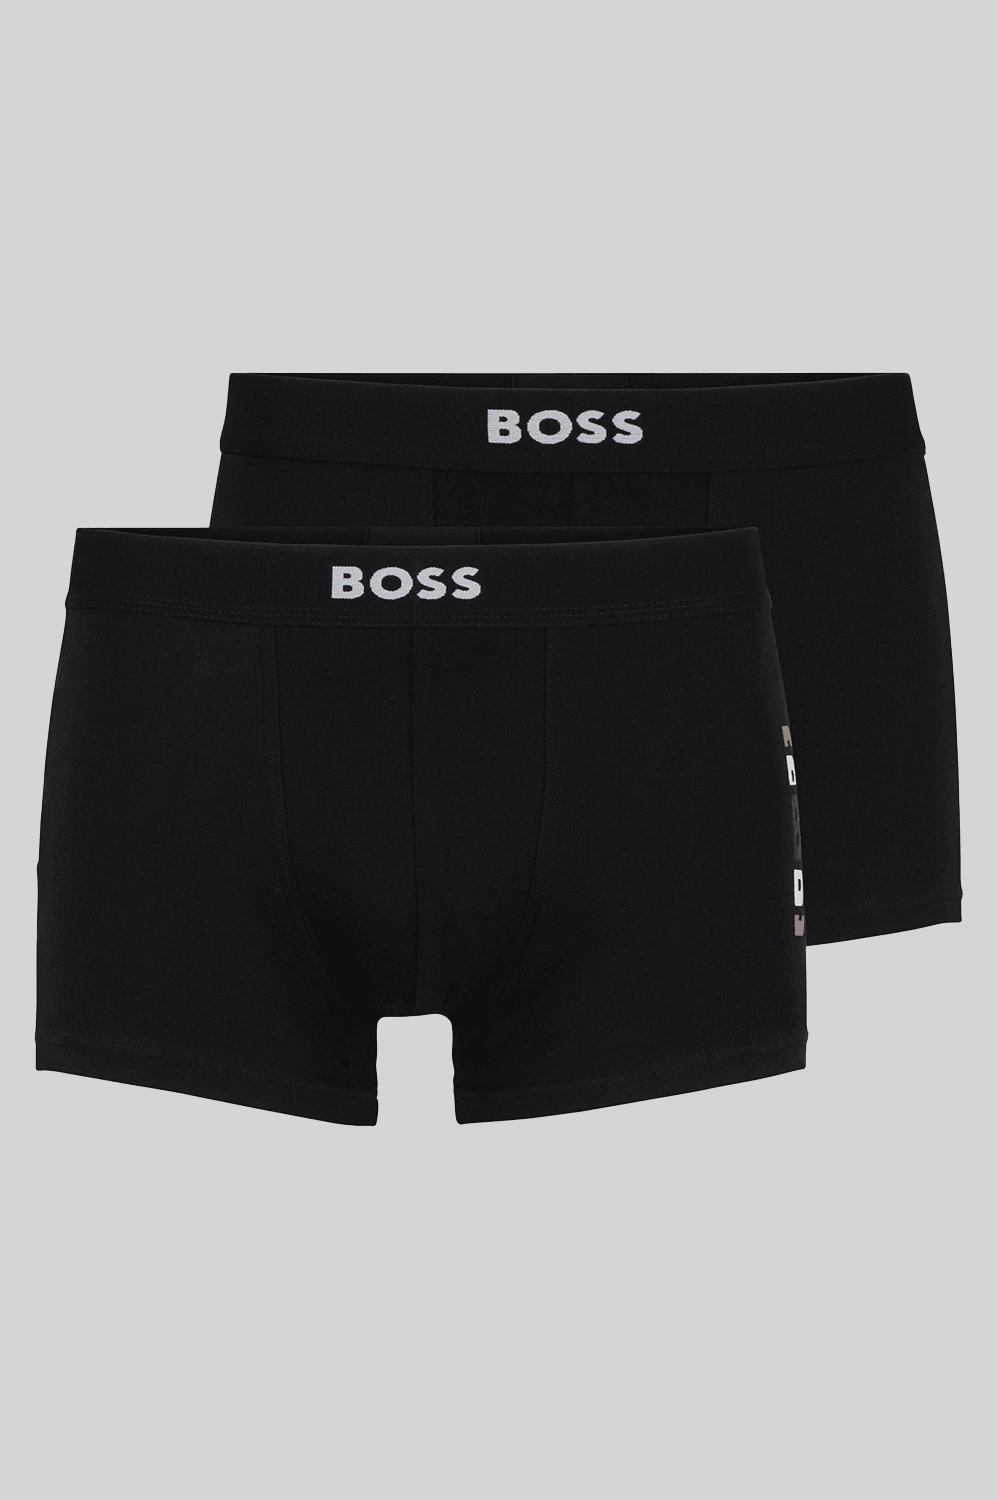 Paquete de dos Boxer Trunks Boss - tiendadicons.com